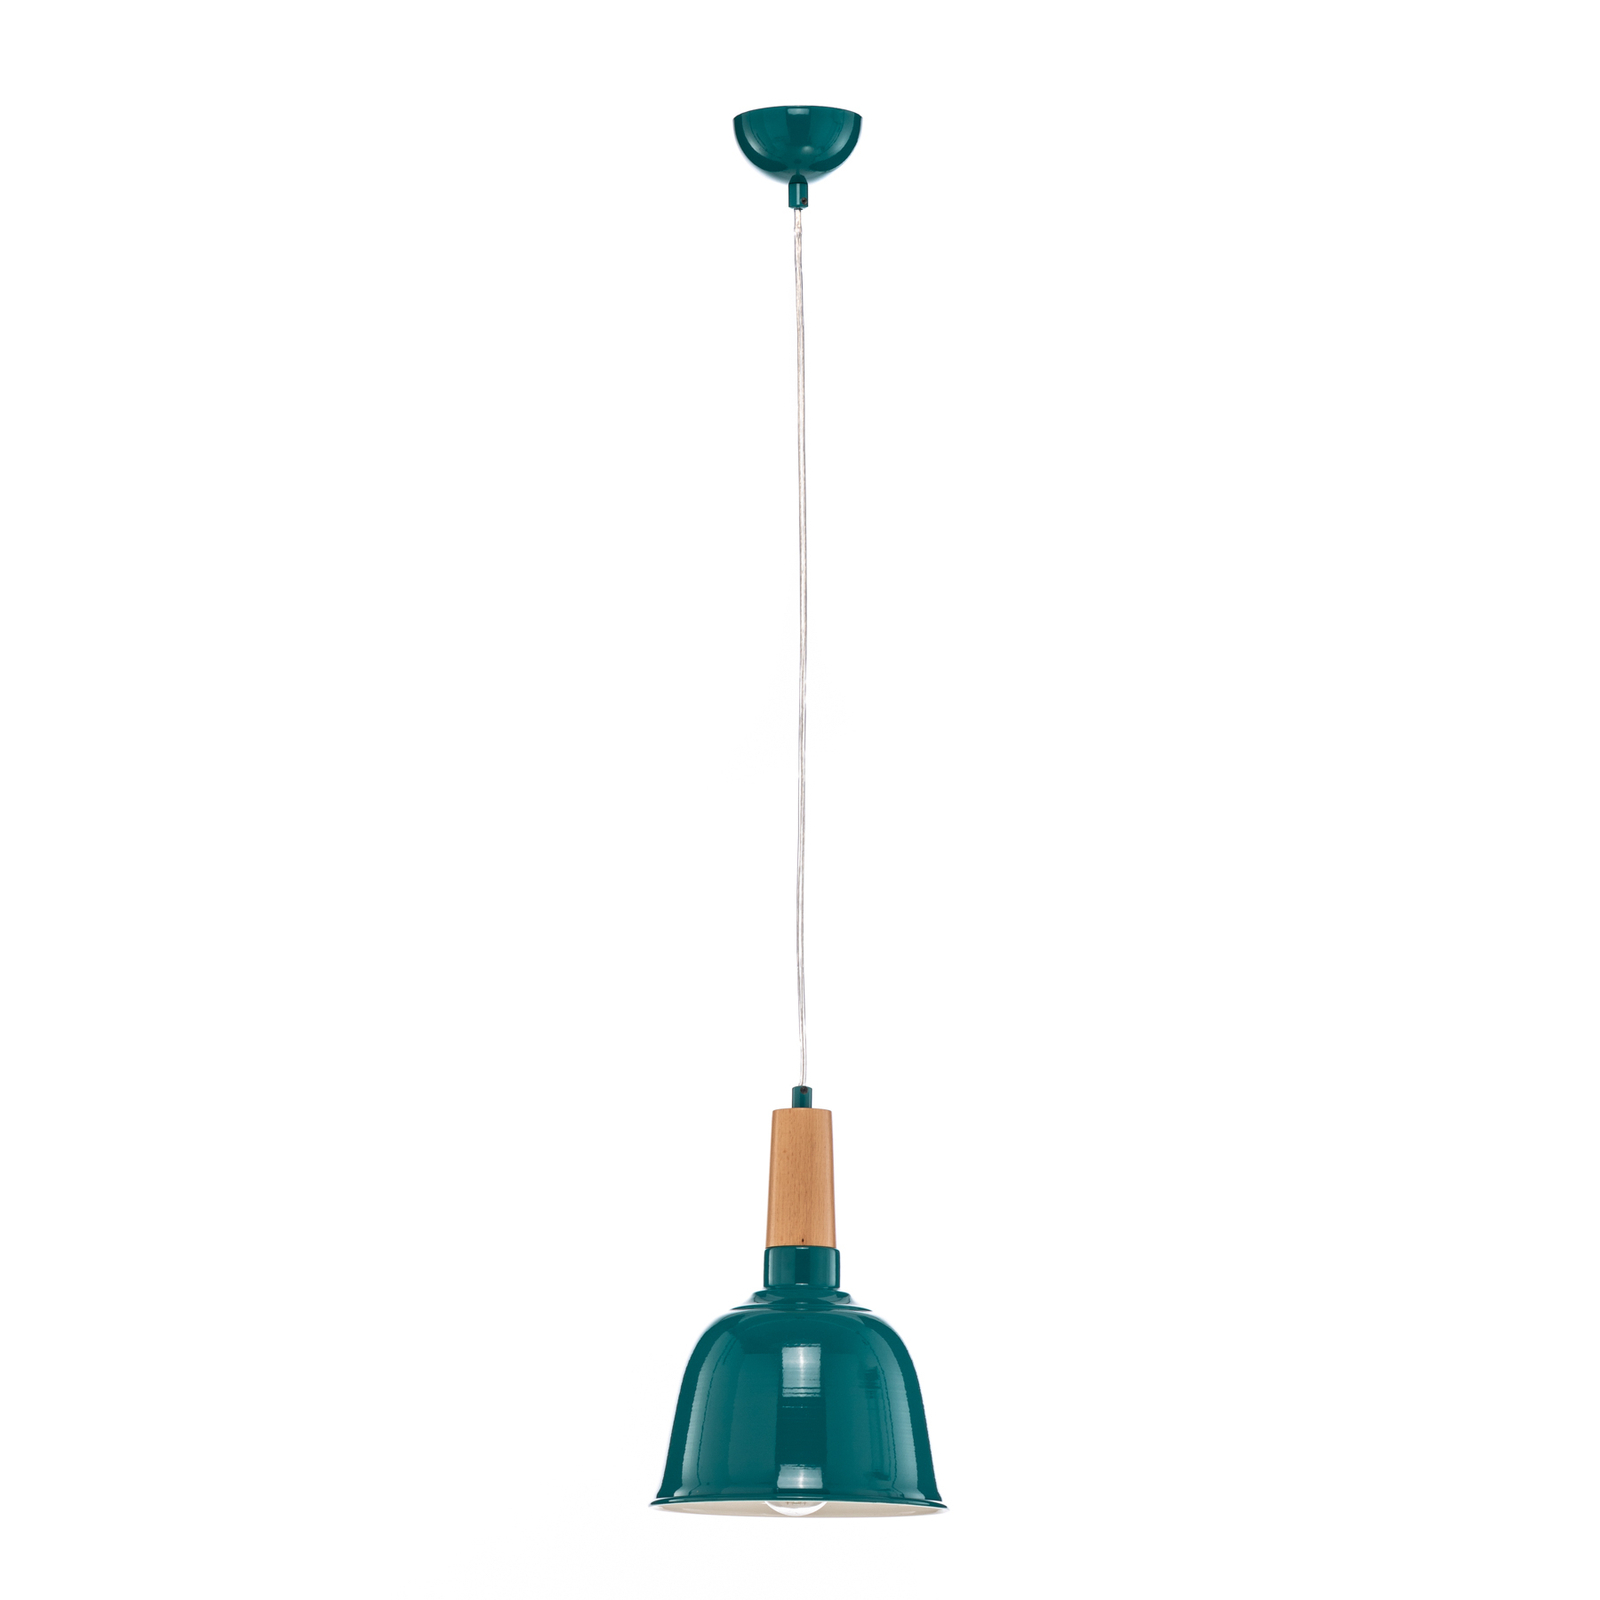 Hanglamp AV-4100-A2-BTK-20 in turquoise glanzend